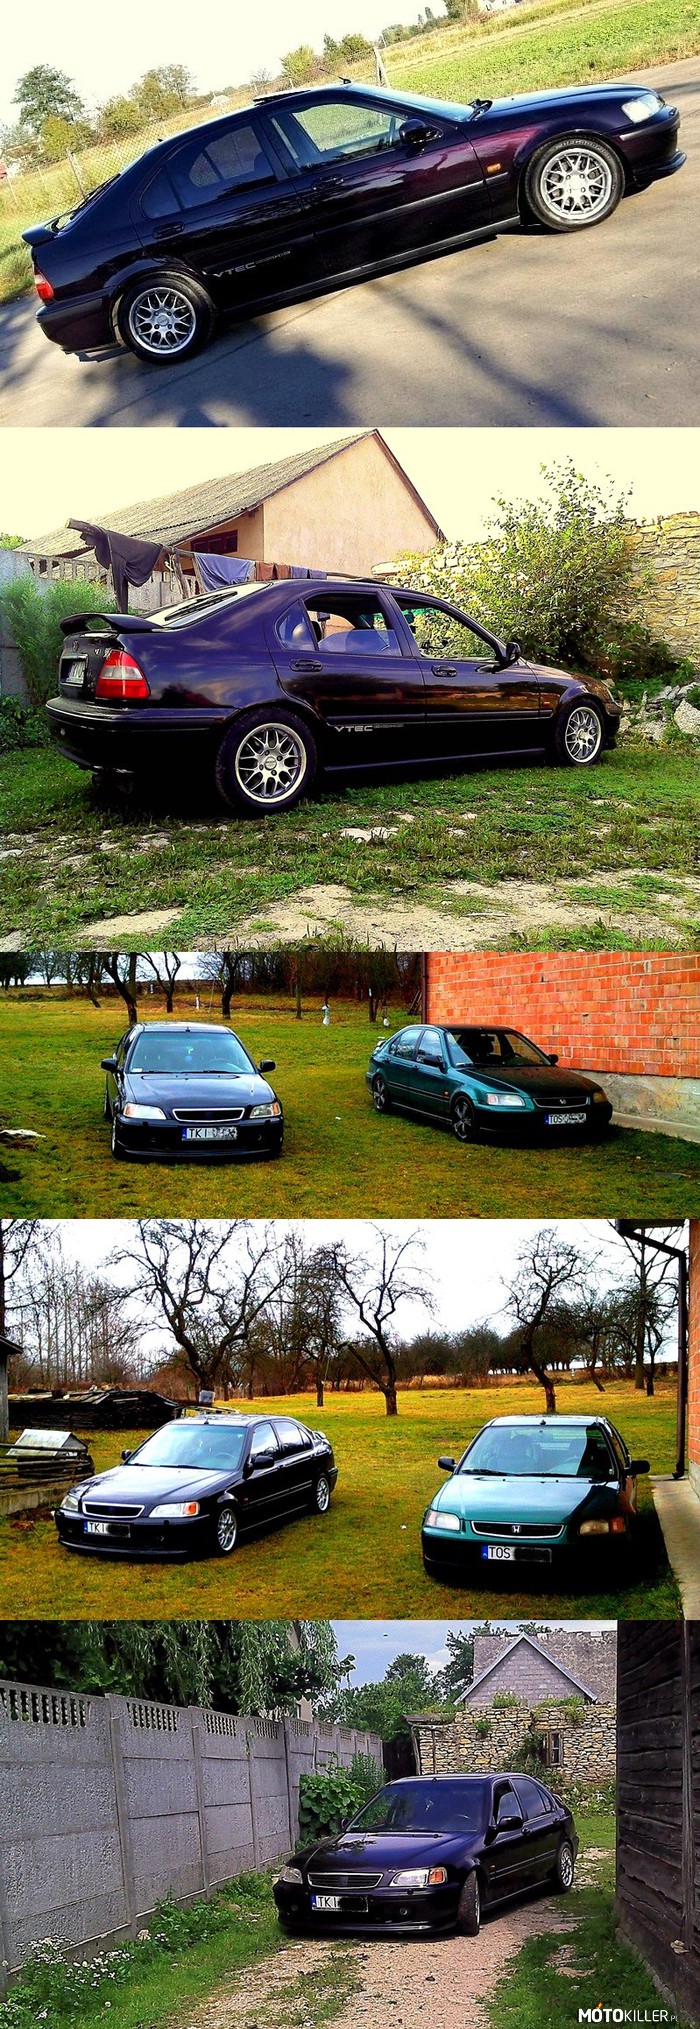 Moja Honda DOHC Vtec 1.8 – 1.8 Vtec i moja poprzednia Honda 1.4i (teraz brat śmiga zieloną) Edytowałem post, aby wam więcej fot pokazać 